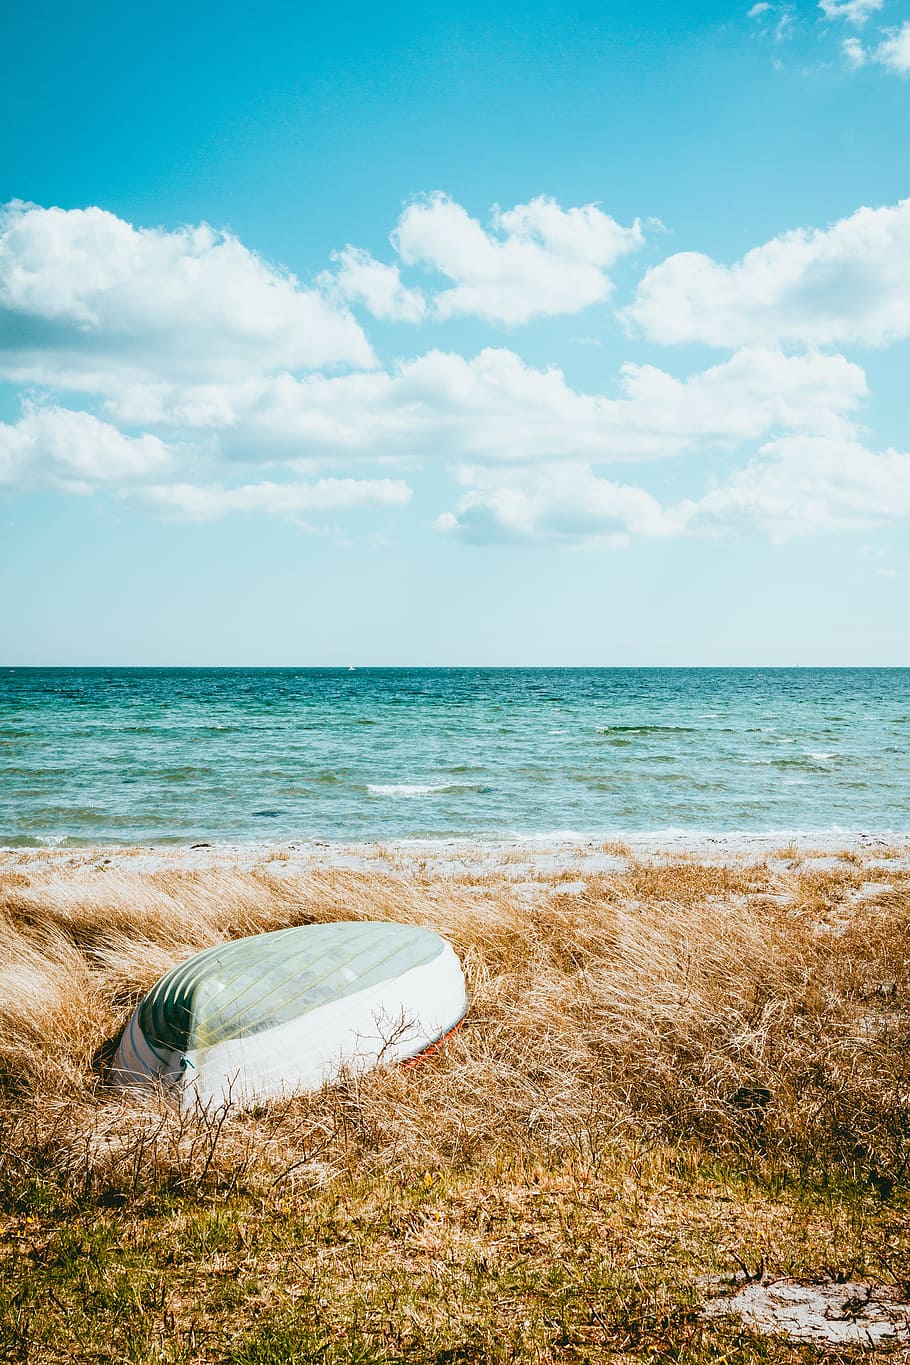 HD wallpaper: boat on beach under blue sky, field, seaside, ocean, horizon  | Wallpaper Flare